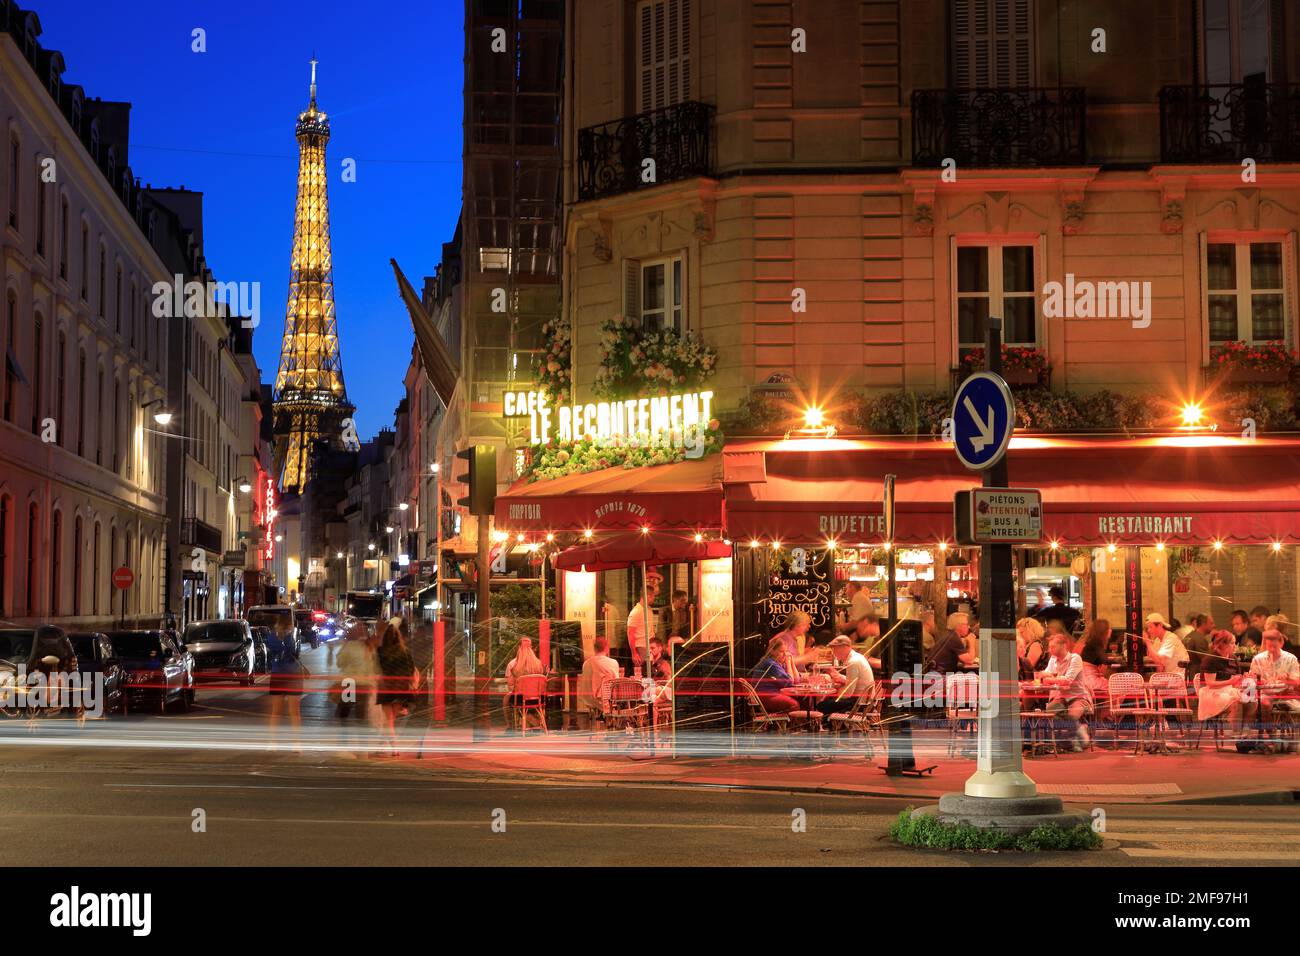 Vue de nuit de la Tour Eiffel et du café le Recrutement au coin de la rue Saint-Dominique et du boulevard de la Tour-Maubourg avec des véhicules à feux arrière.Paris.France Banque D'Images